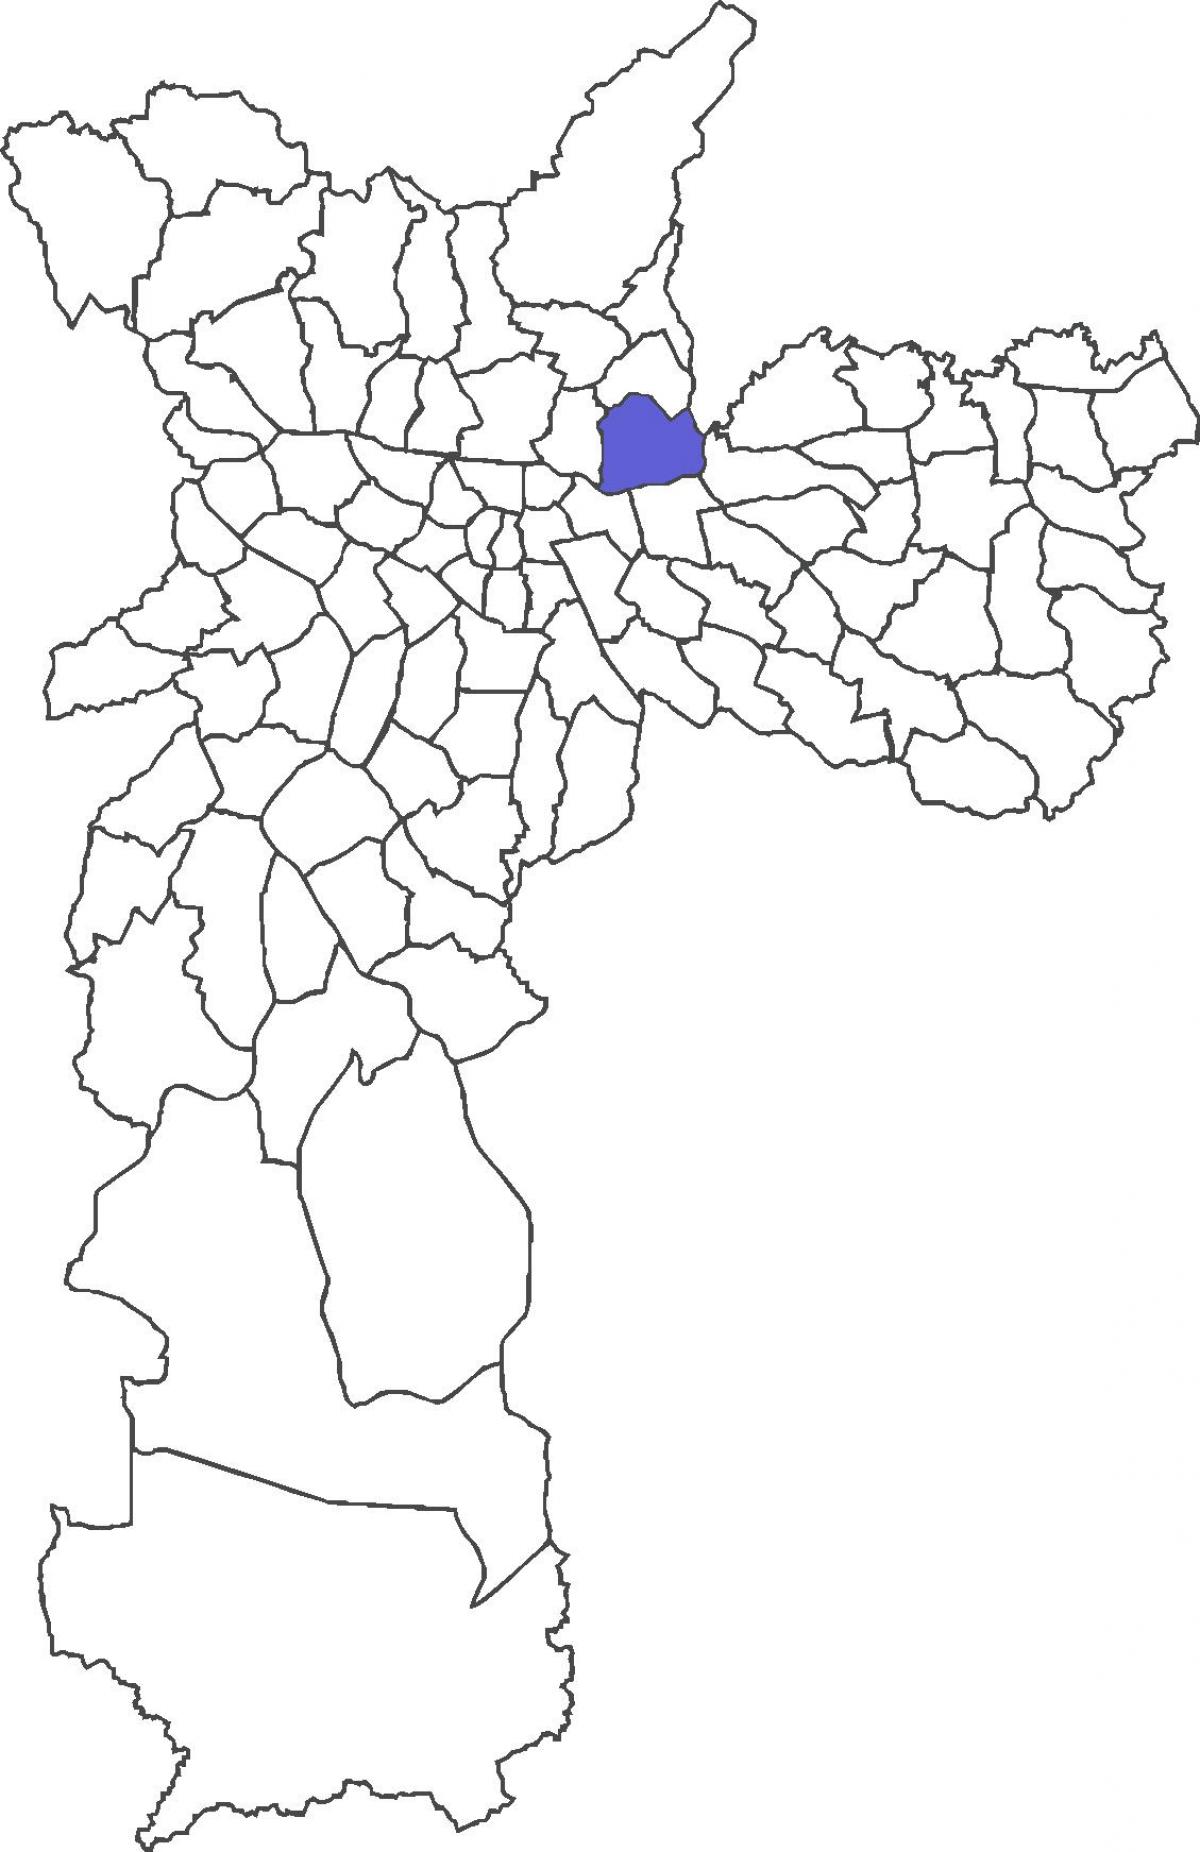 Mapa Vila Maria distriktu